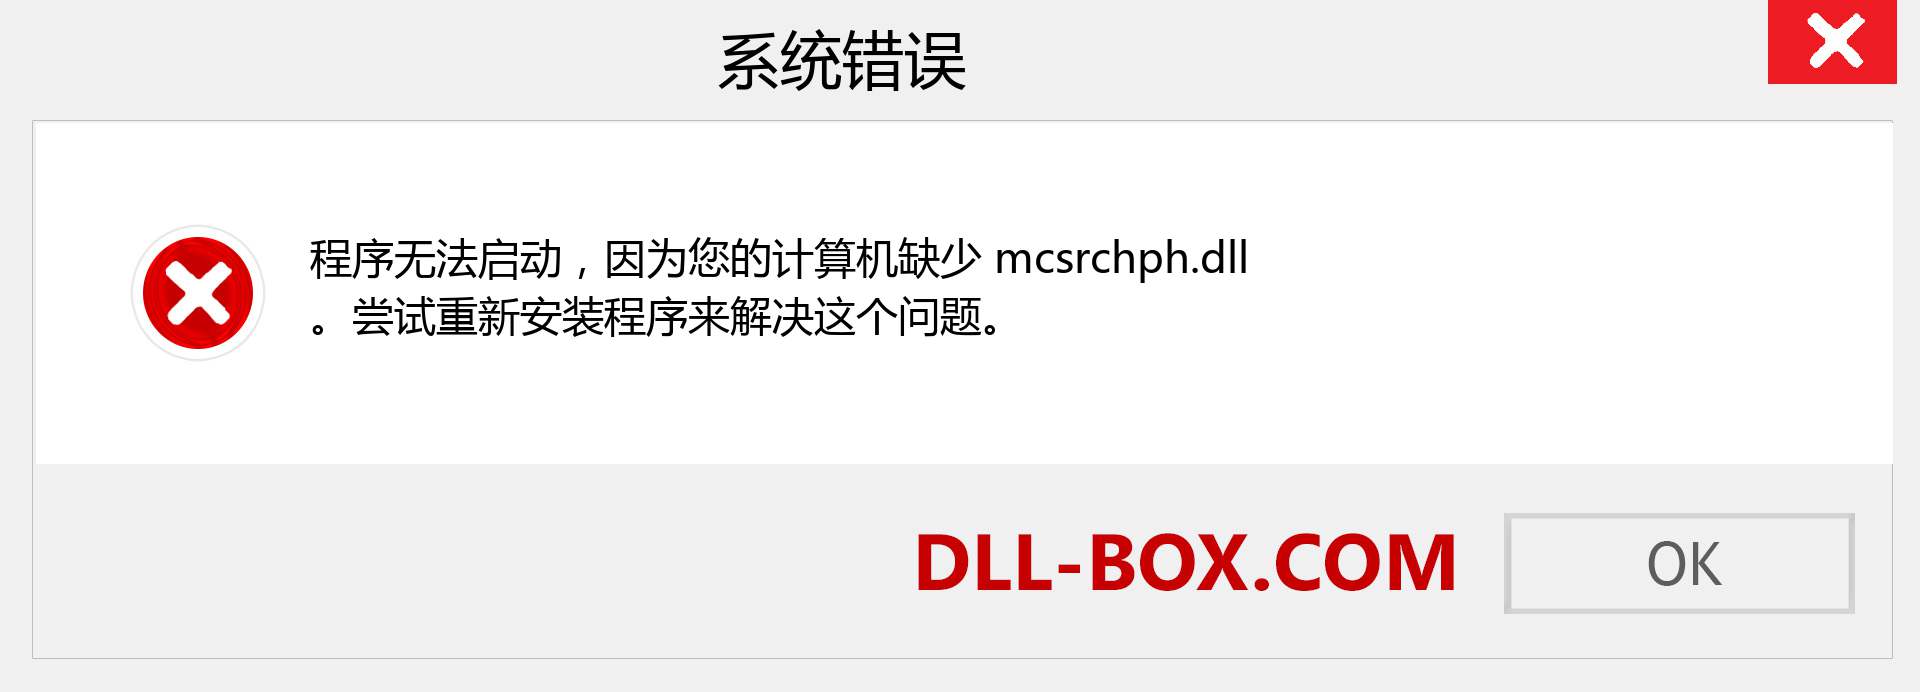 mcsrchph.dll 文件丢失？。 适用于 Windows 7、8、10 的下载 - 修复 Windows、照片、图像上的 mcsrchph dll 丢失错误